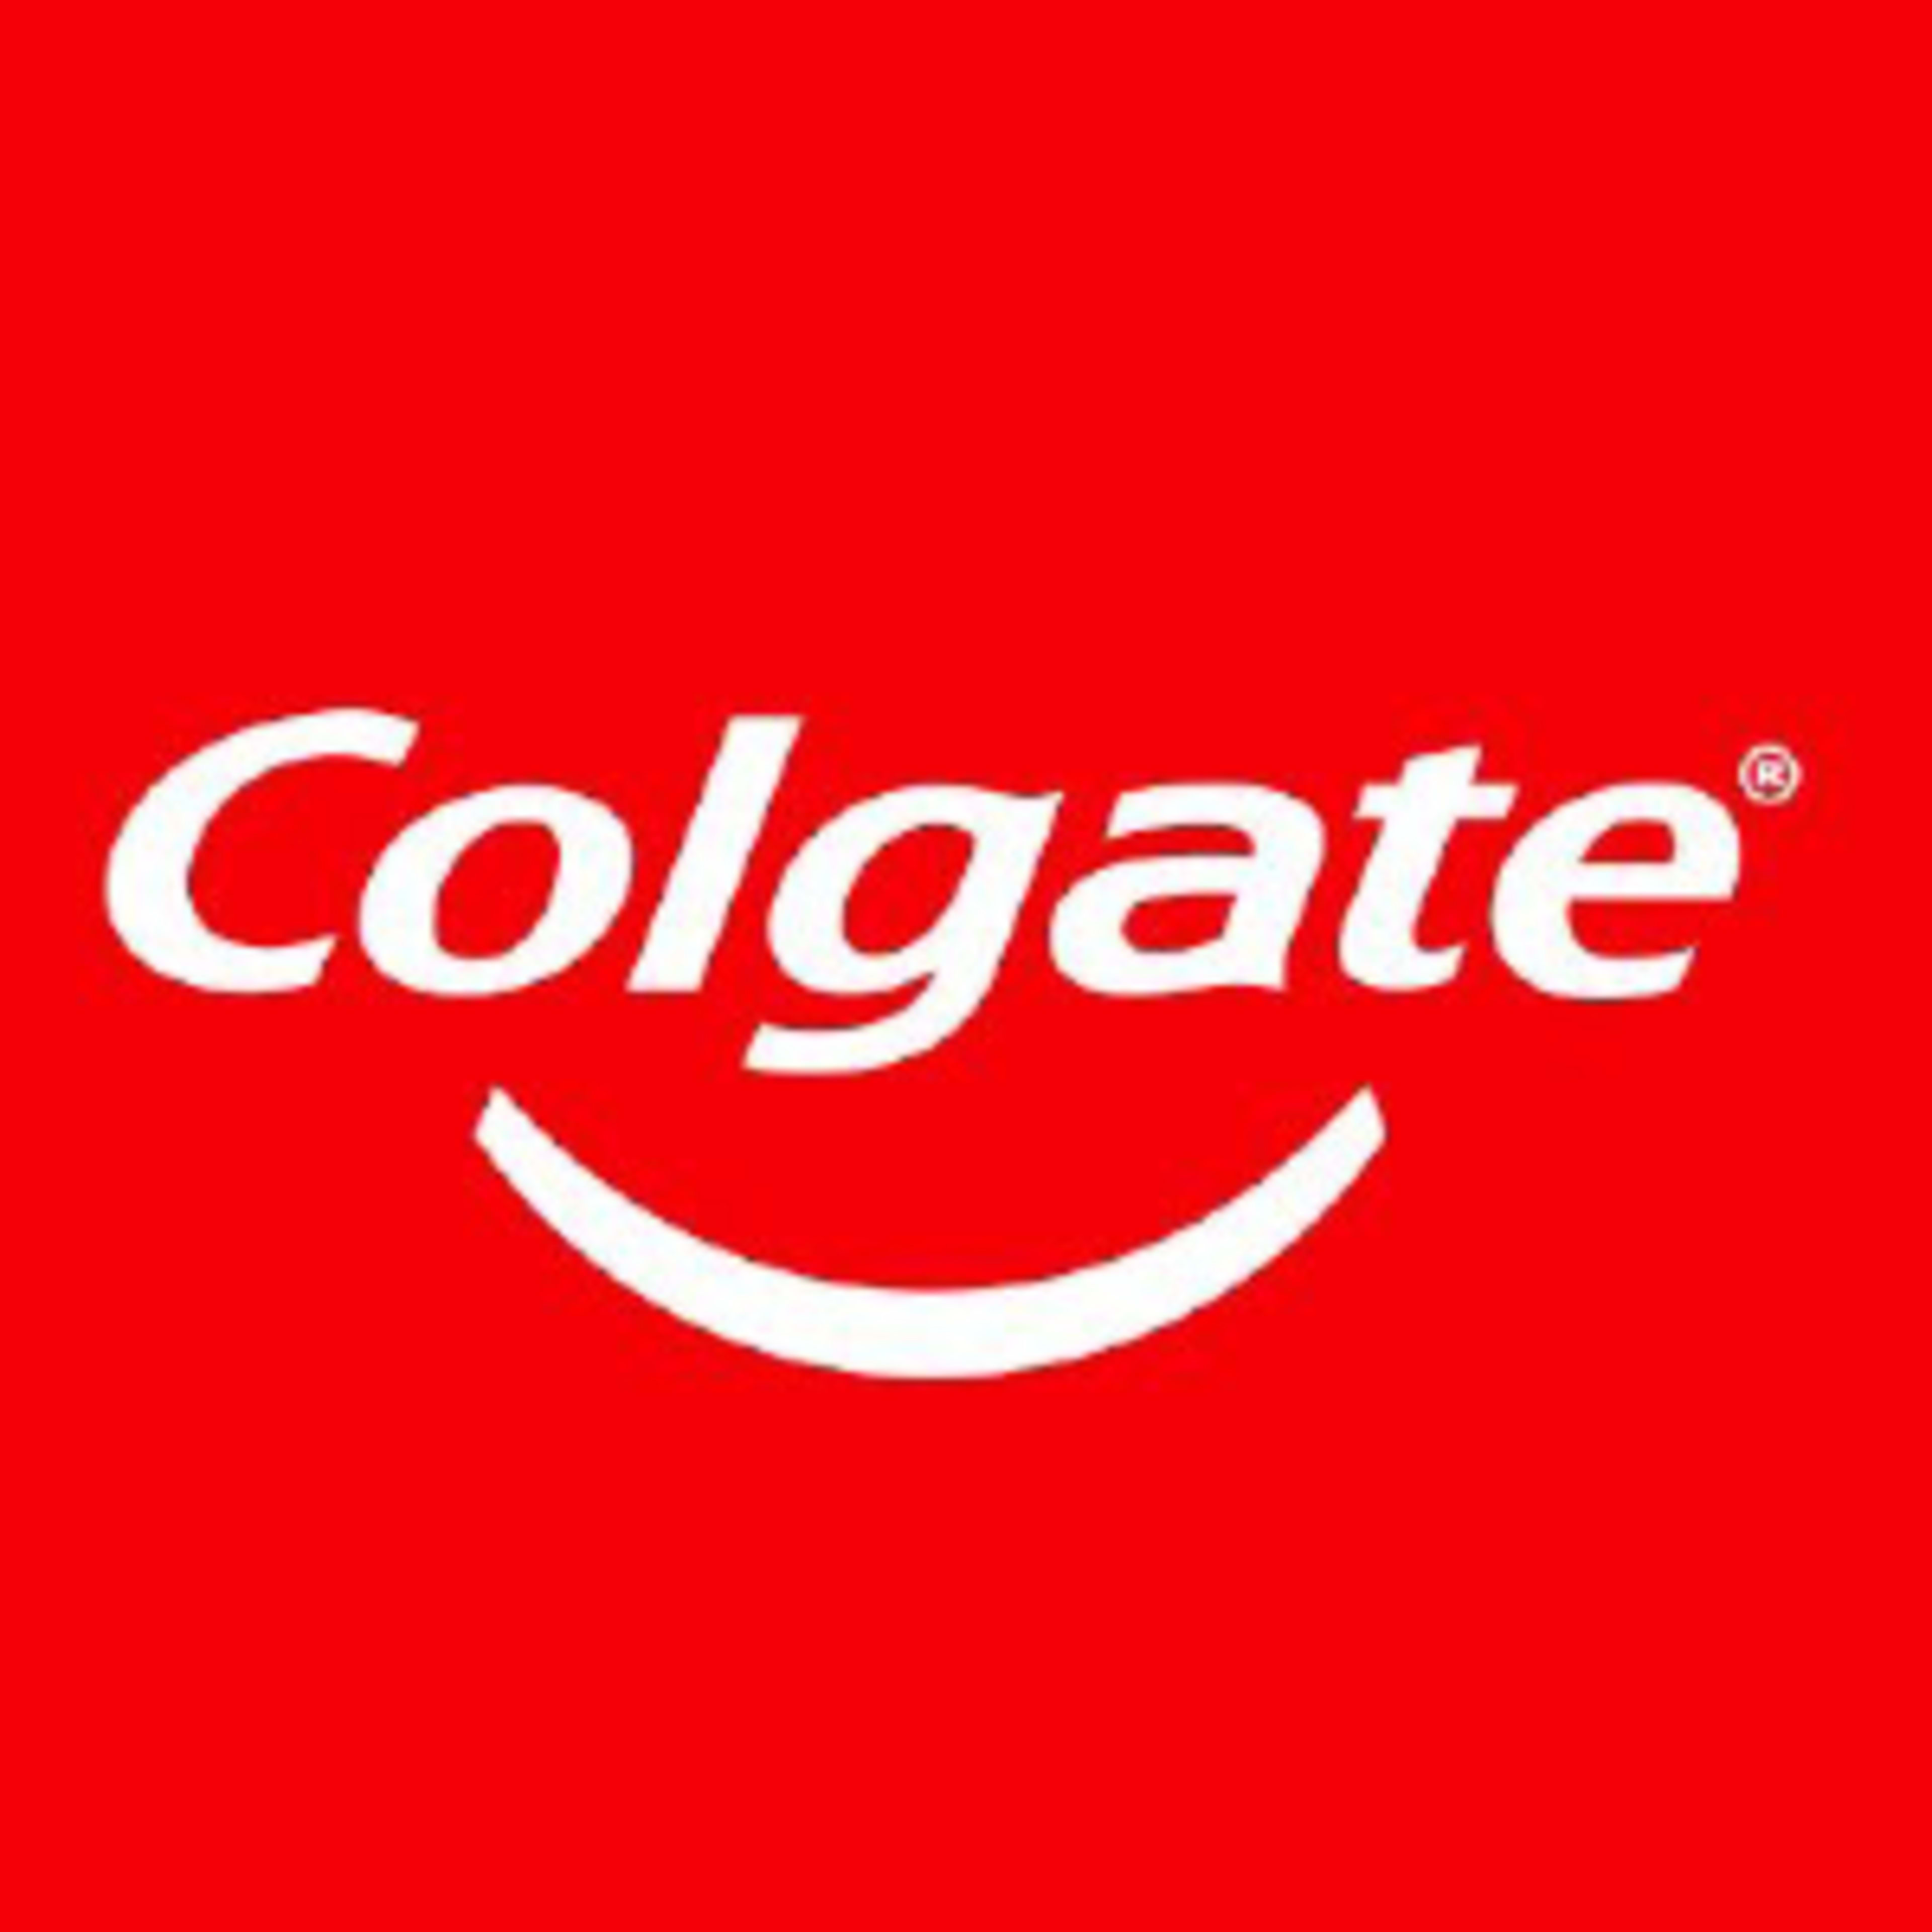 ColgateCode